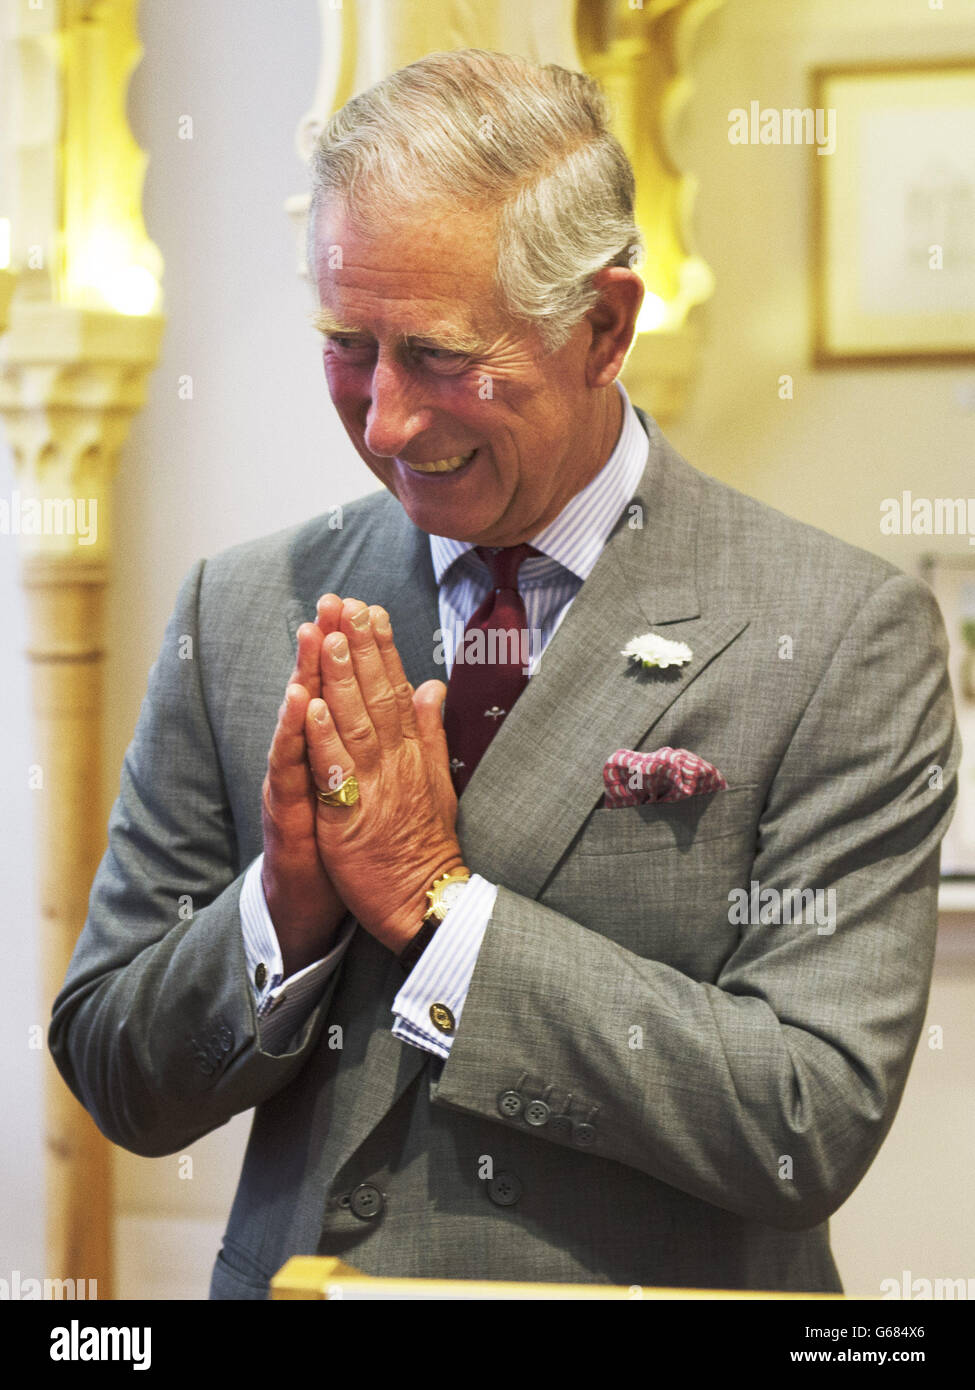 Prinz Charles besucht die Degree Show der School of Traditional Arts, London. DRÜCKEN SIE VERBANDSFOTO. Bilddatum: Mittwoch, 10. Juli 2013. Stockfoto